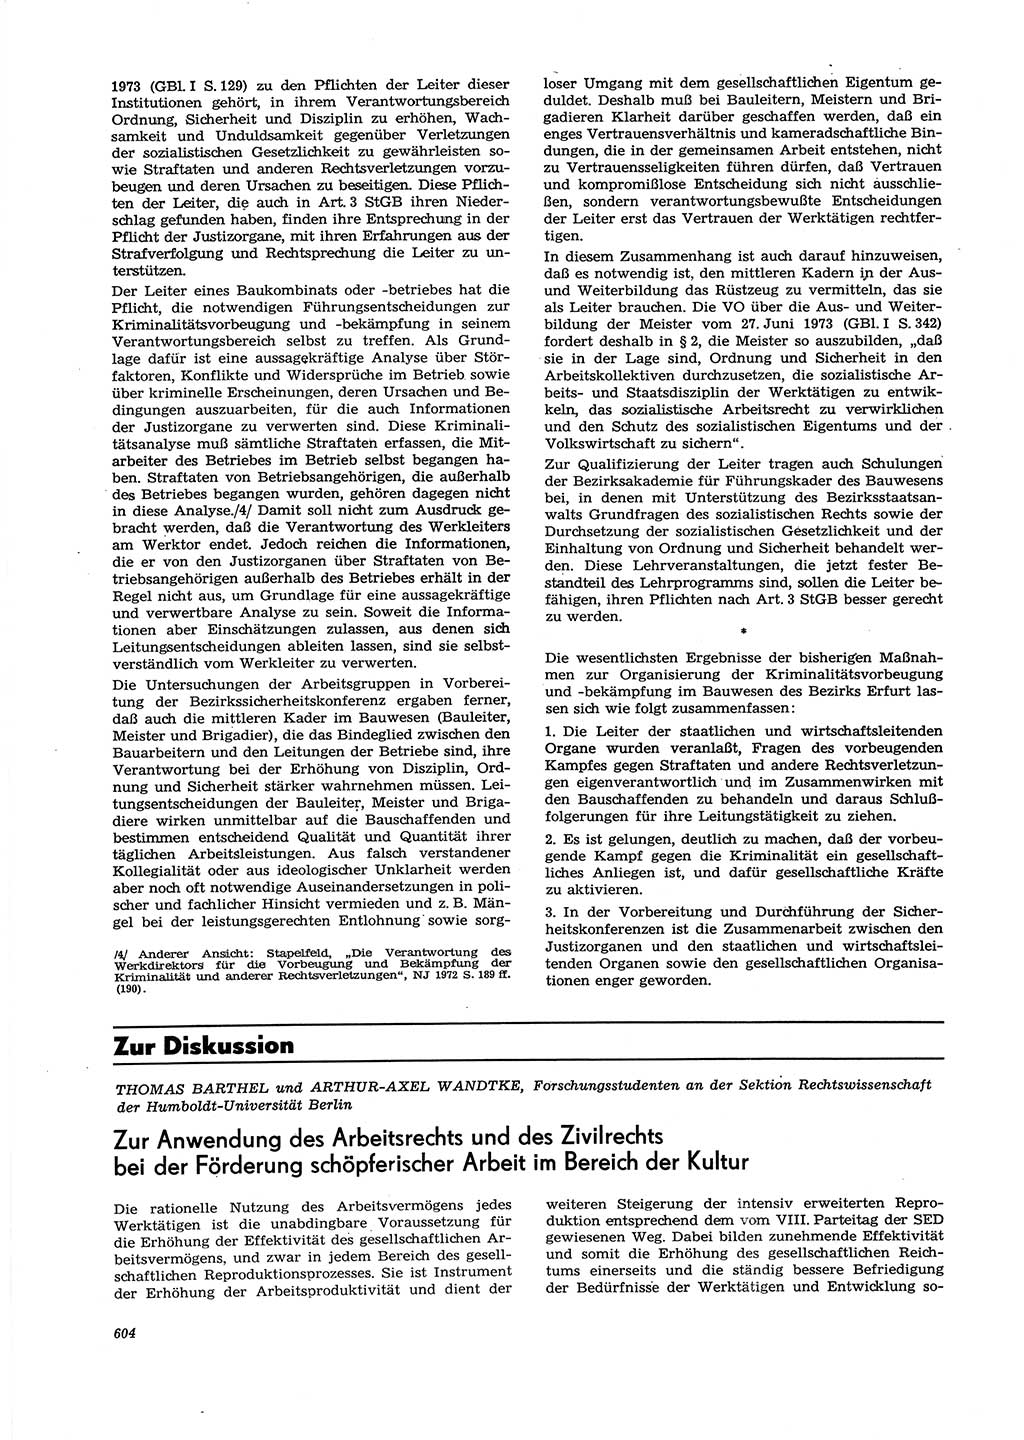 Neue Justiz (NJ), Zeitschrift für Recht und Rechtswissenschaft [Deutsche Demokratische Republik (DDR)], 27. Jahrgang 1973, Seite 604 (NJ DDR 1973, S. 604)